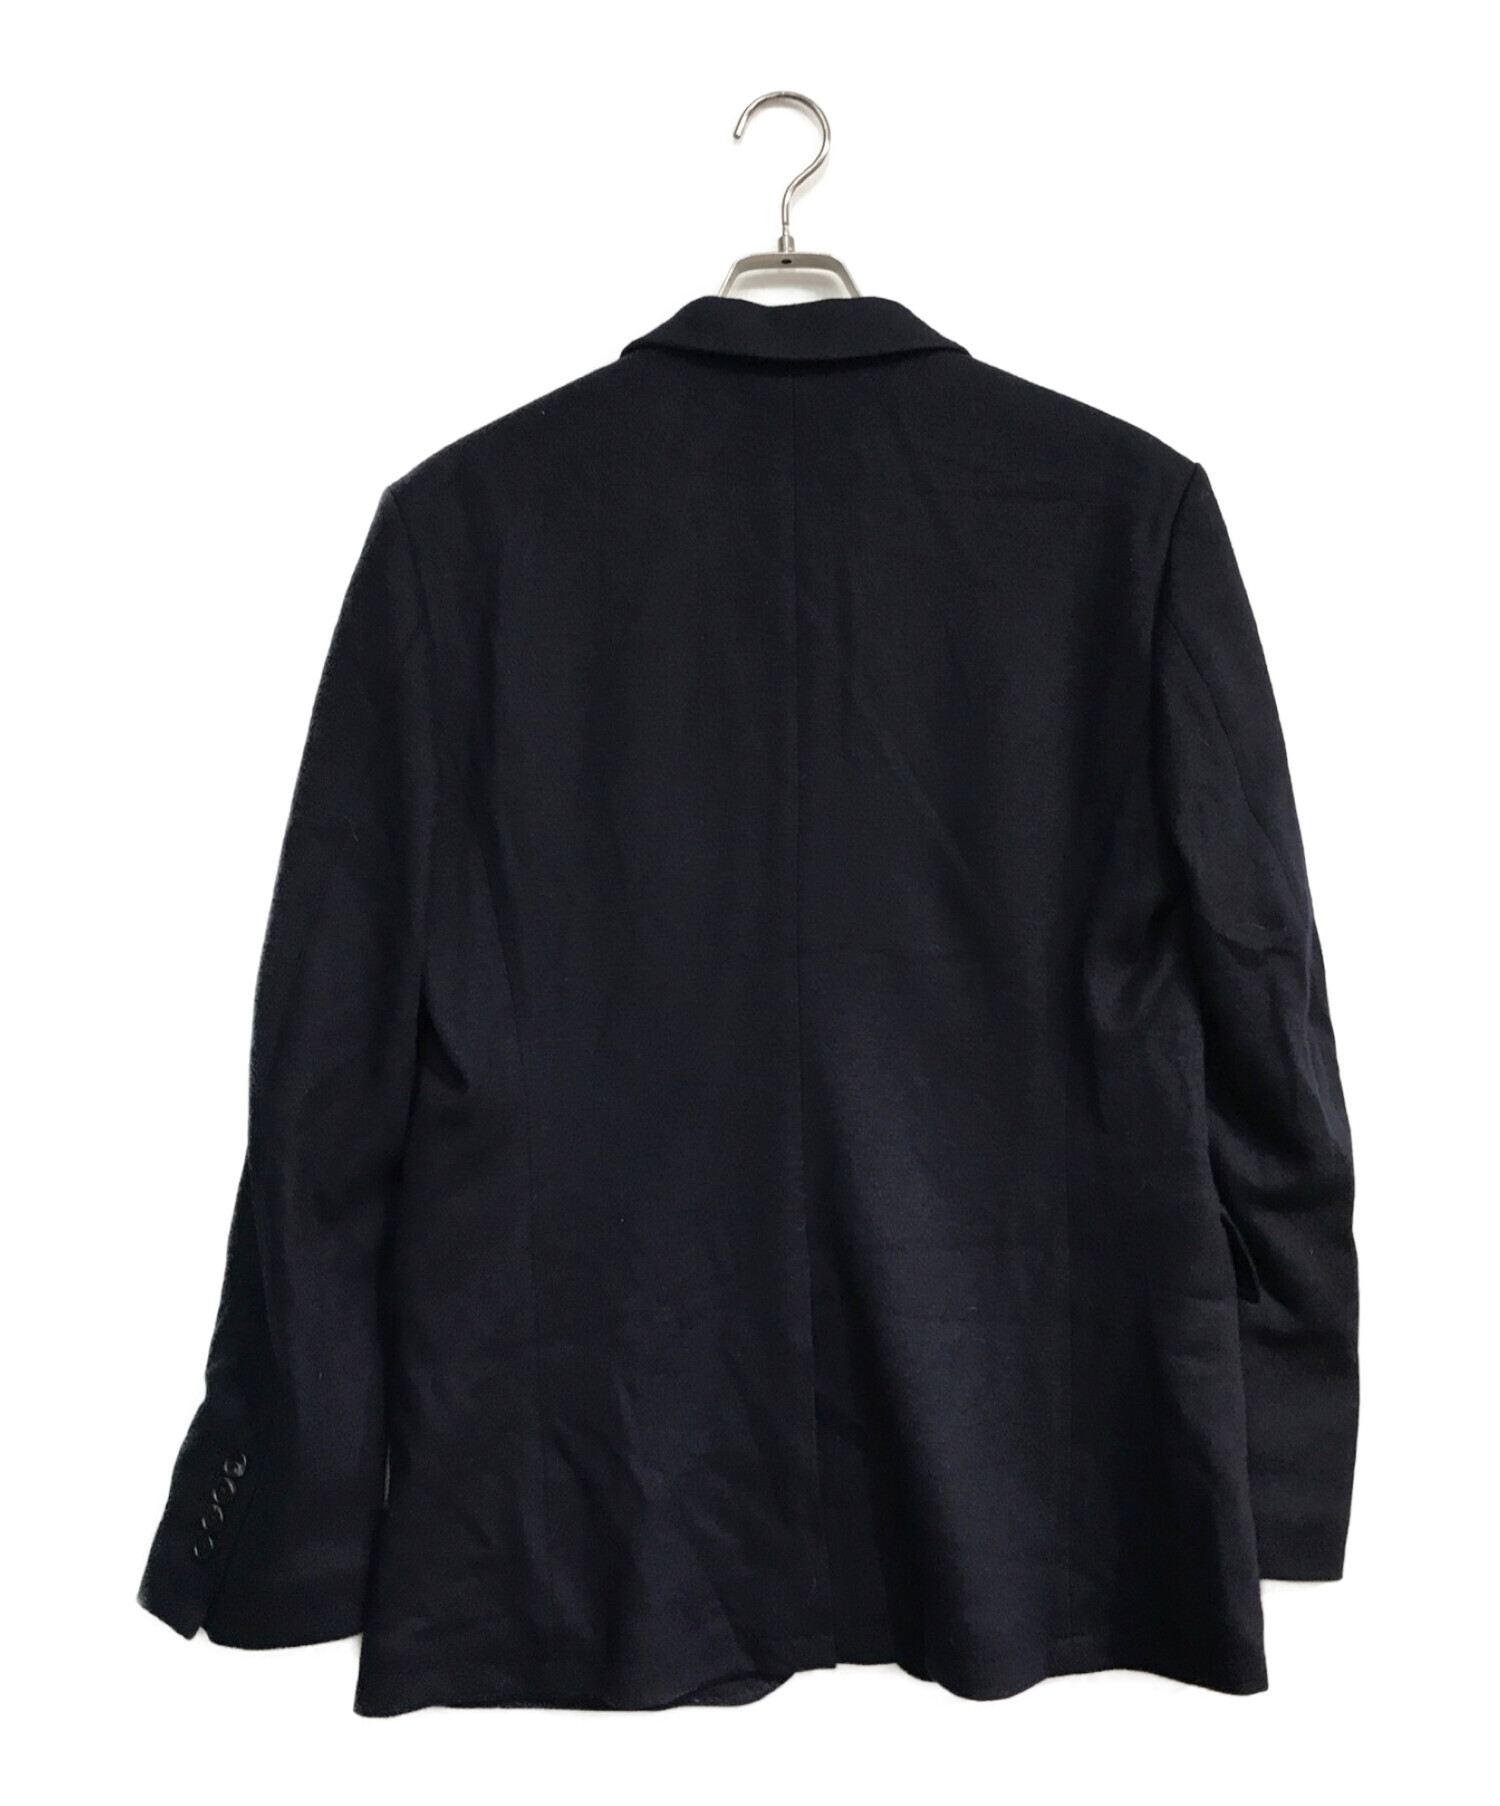 Paul Smith COLLECTION (ポールスミス コレクション) テーラードジャケット ネイビー サイズ:XL 未使用品